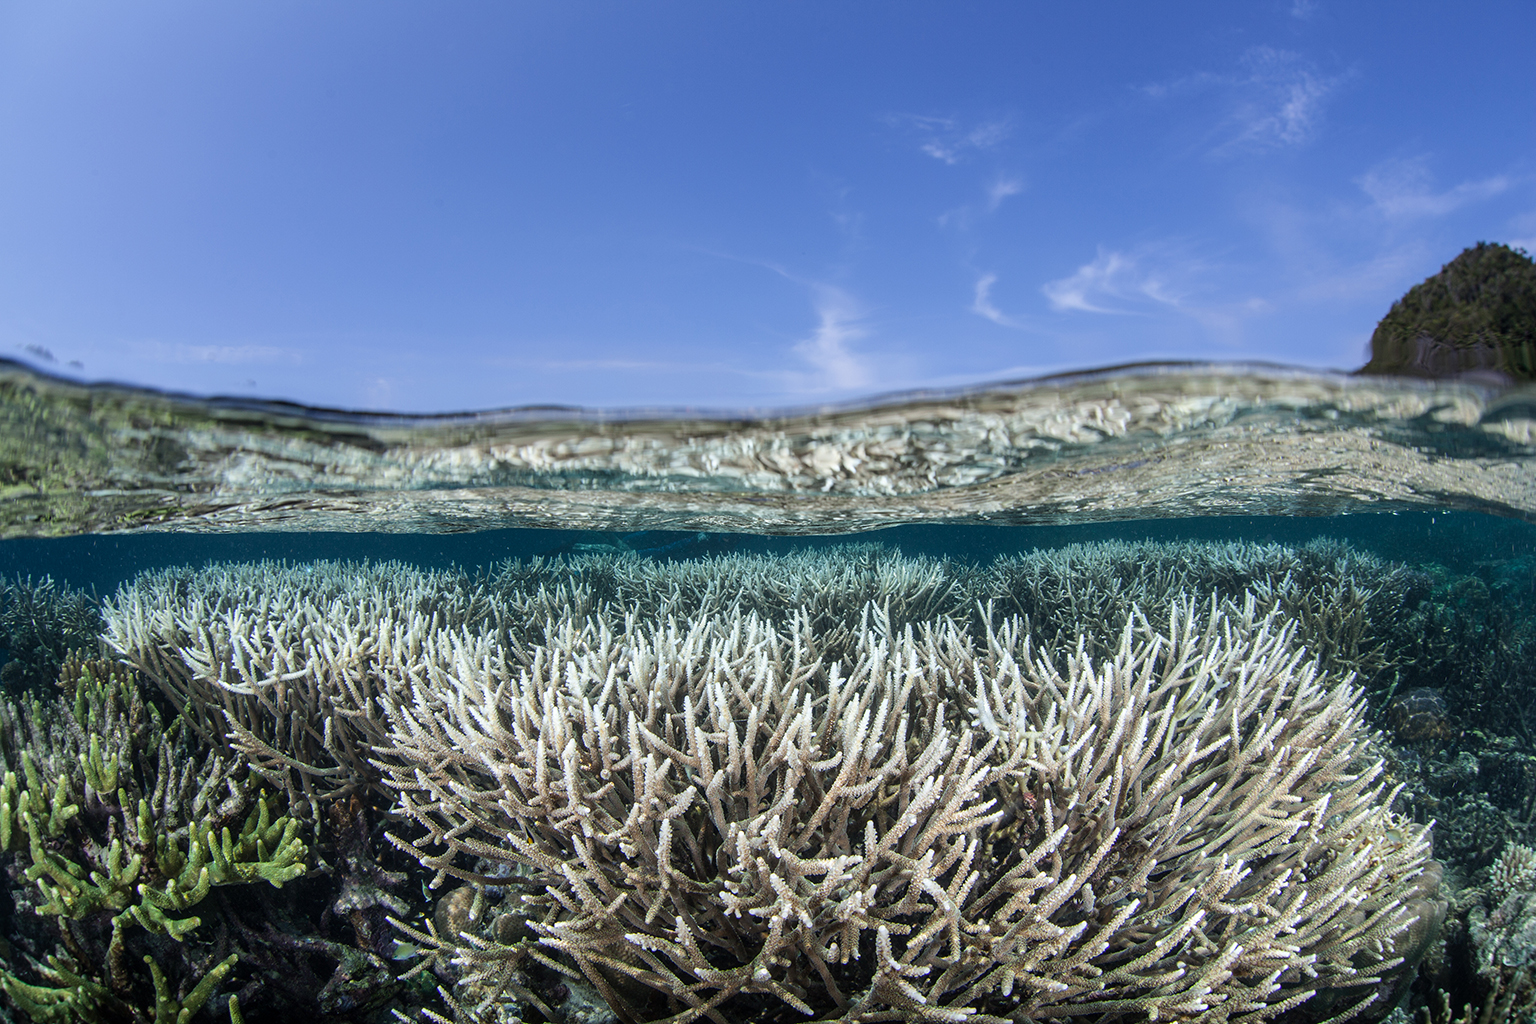 วิกฤต ! ทั่วโลกกำลังเผชิญปรากฏการณ์ 'ปะการังฟอกขาว' ครั้งรุนแรงในรอบ 10 ปี